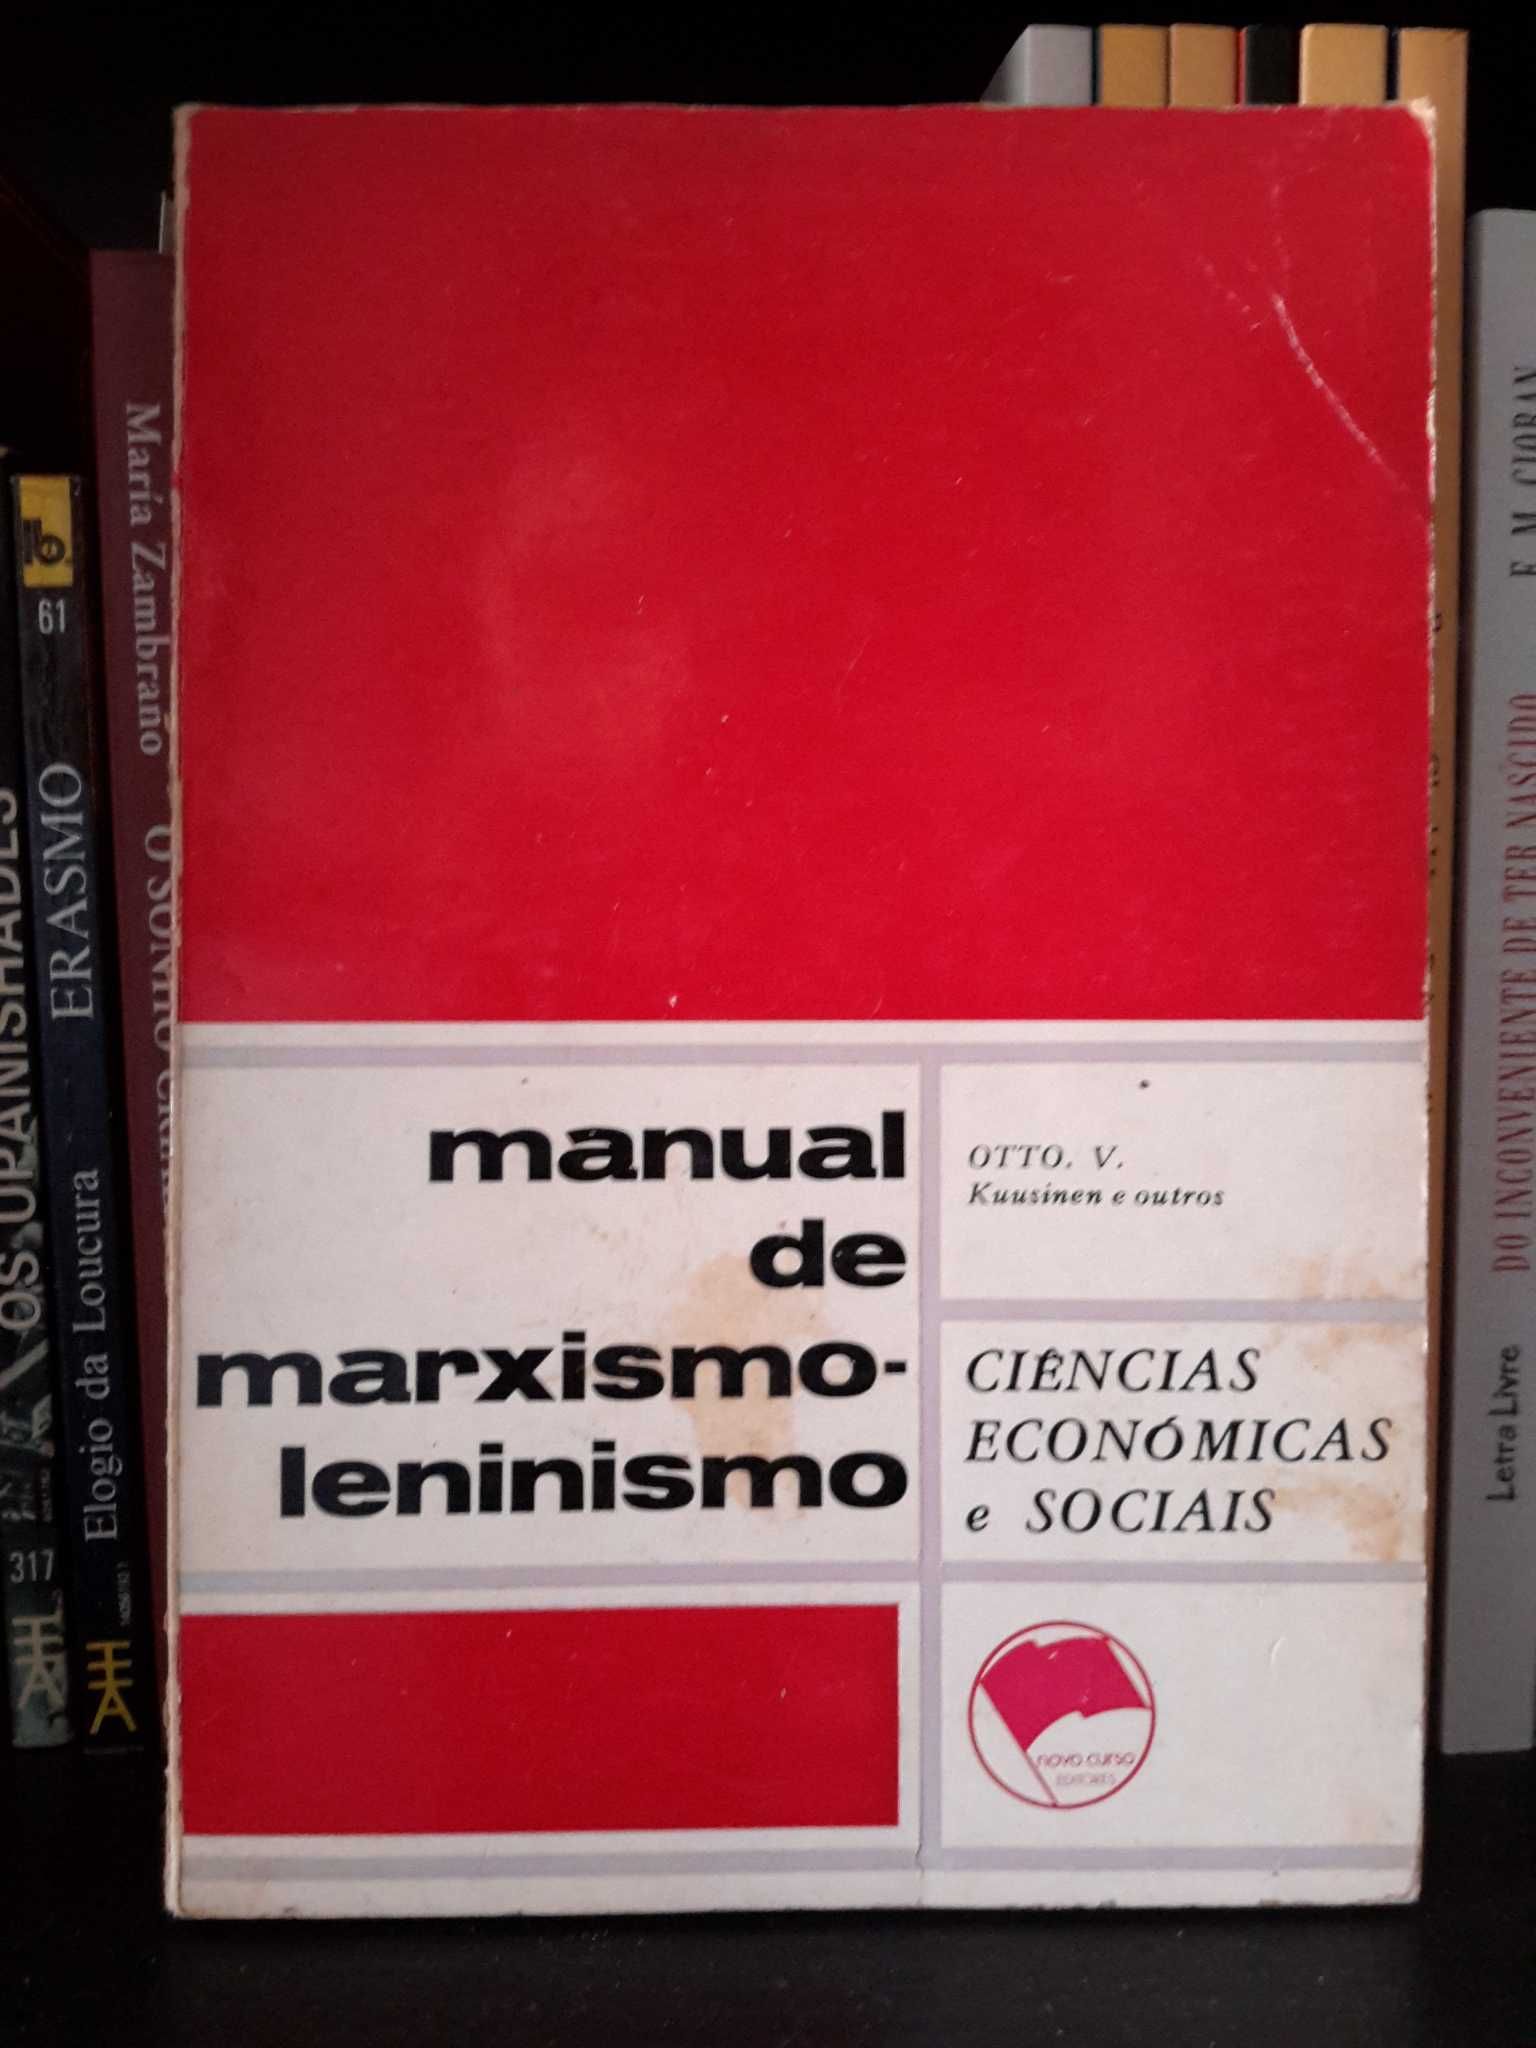 Otto. V. Kuusinen - Manual de Marxismo-Leninismo (1.º volume)